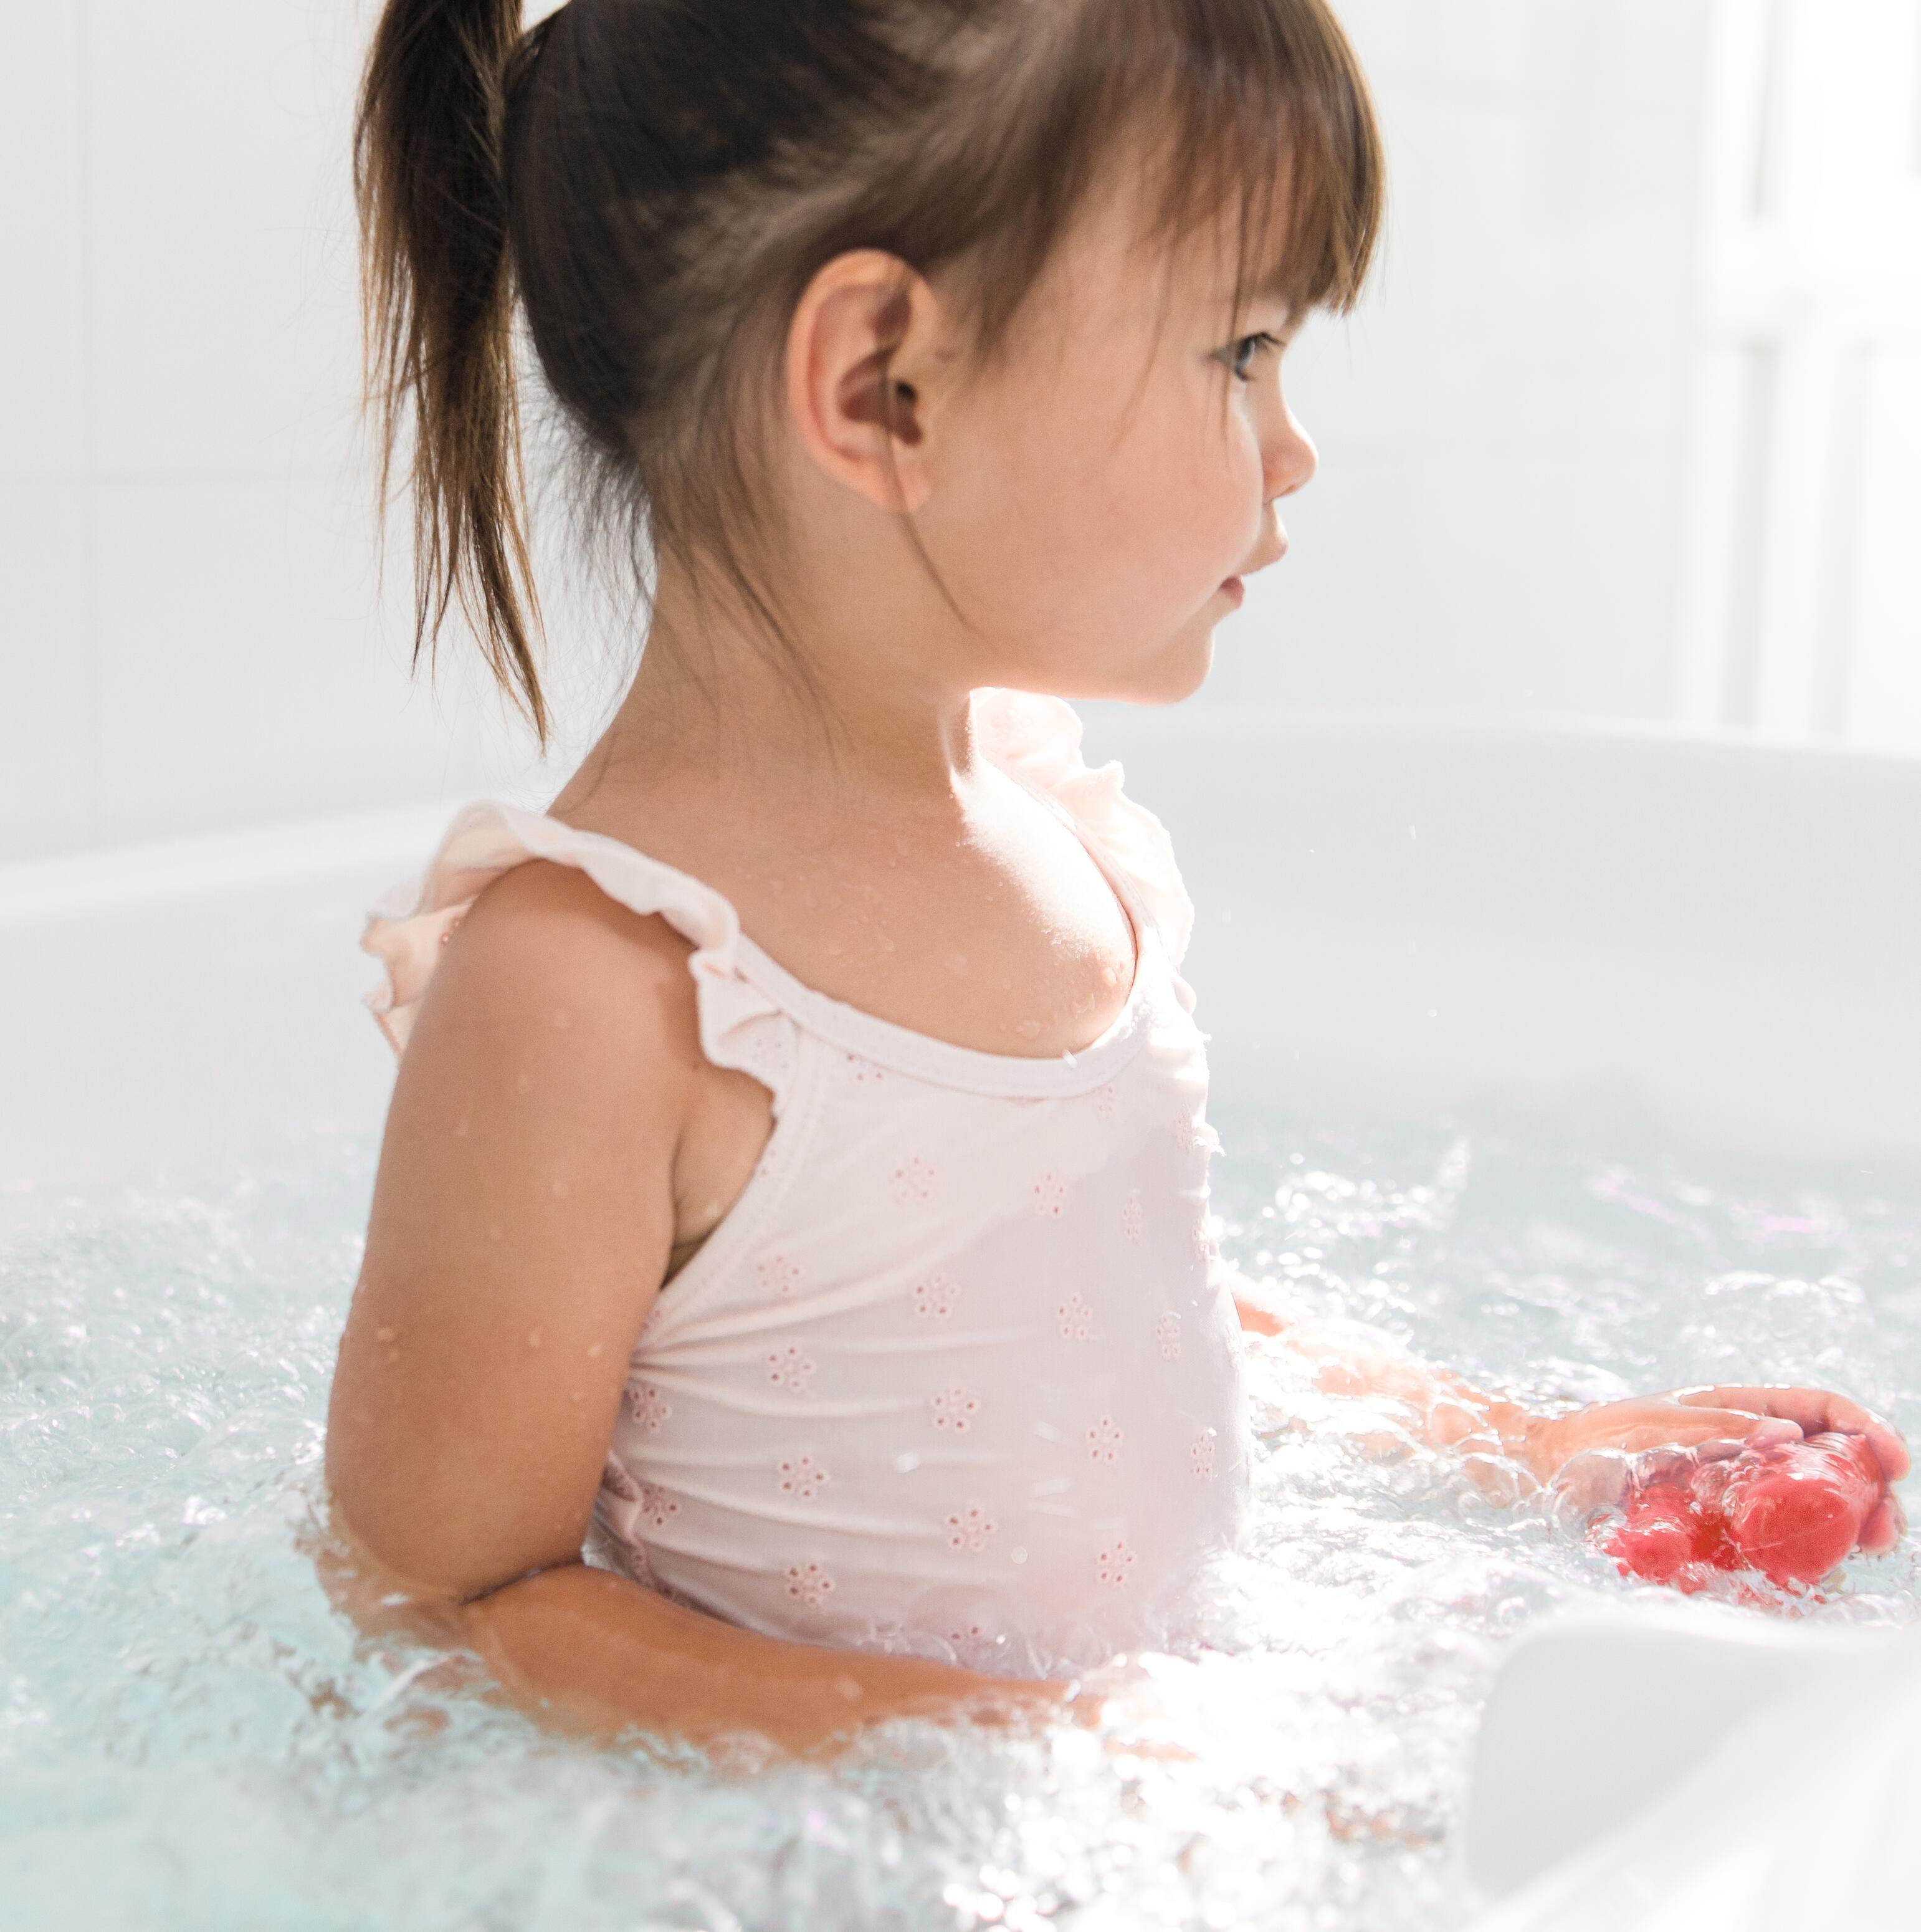 Έκζεμα και ψωρίαση: μπορεί το παιδί μου να κάνει μπάνιο;